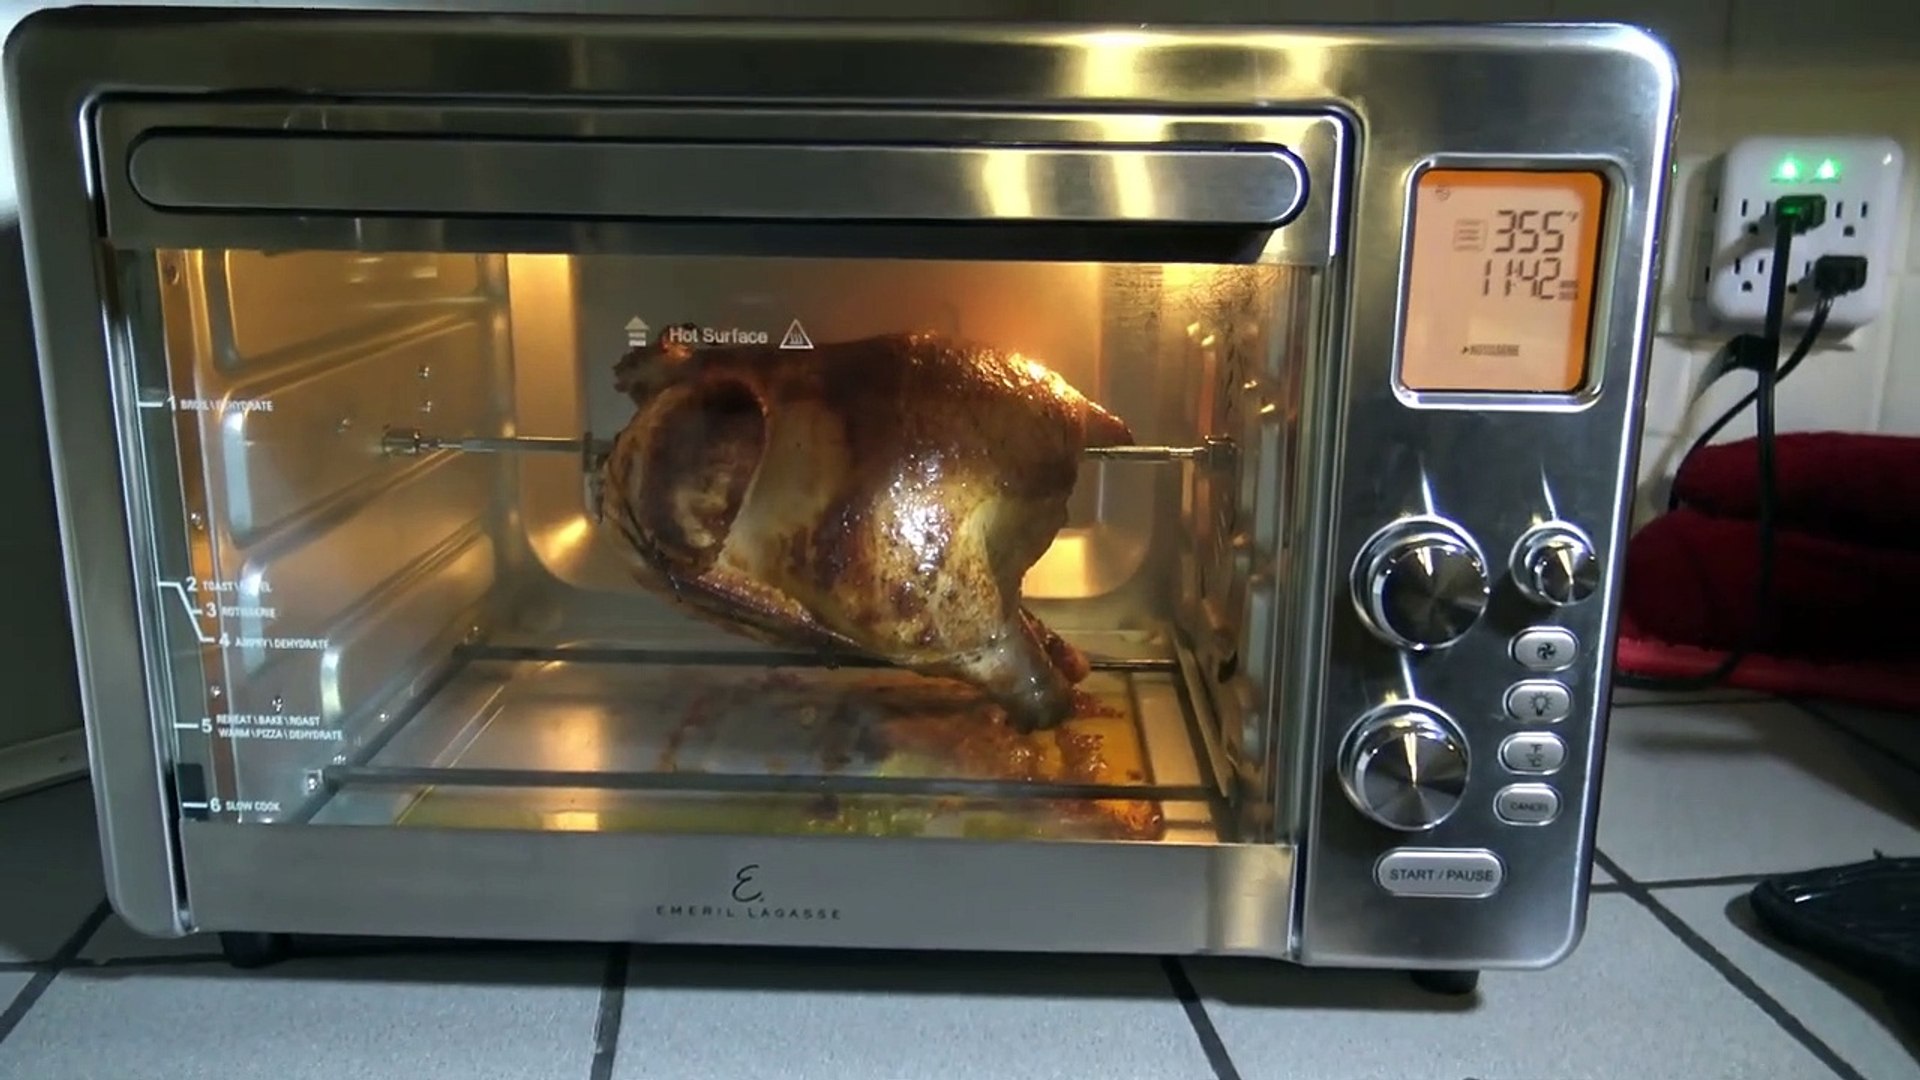 Big Rotisserie Chicken, Emeril Lagasse Power Air Fryer 360 Xl Recipe -  video Dailymotion